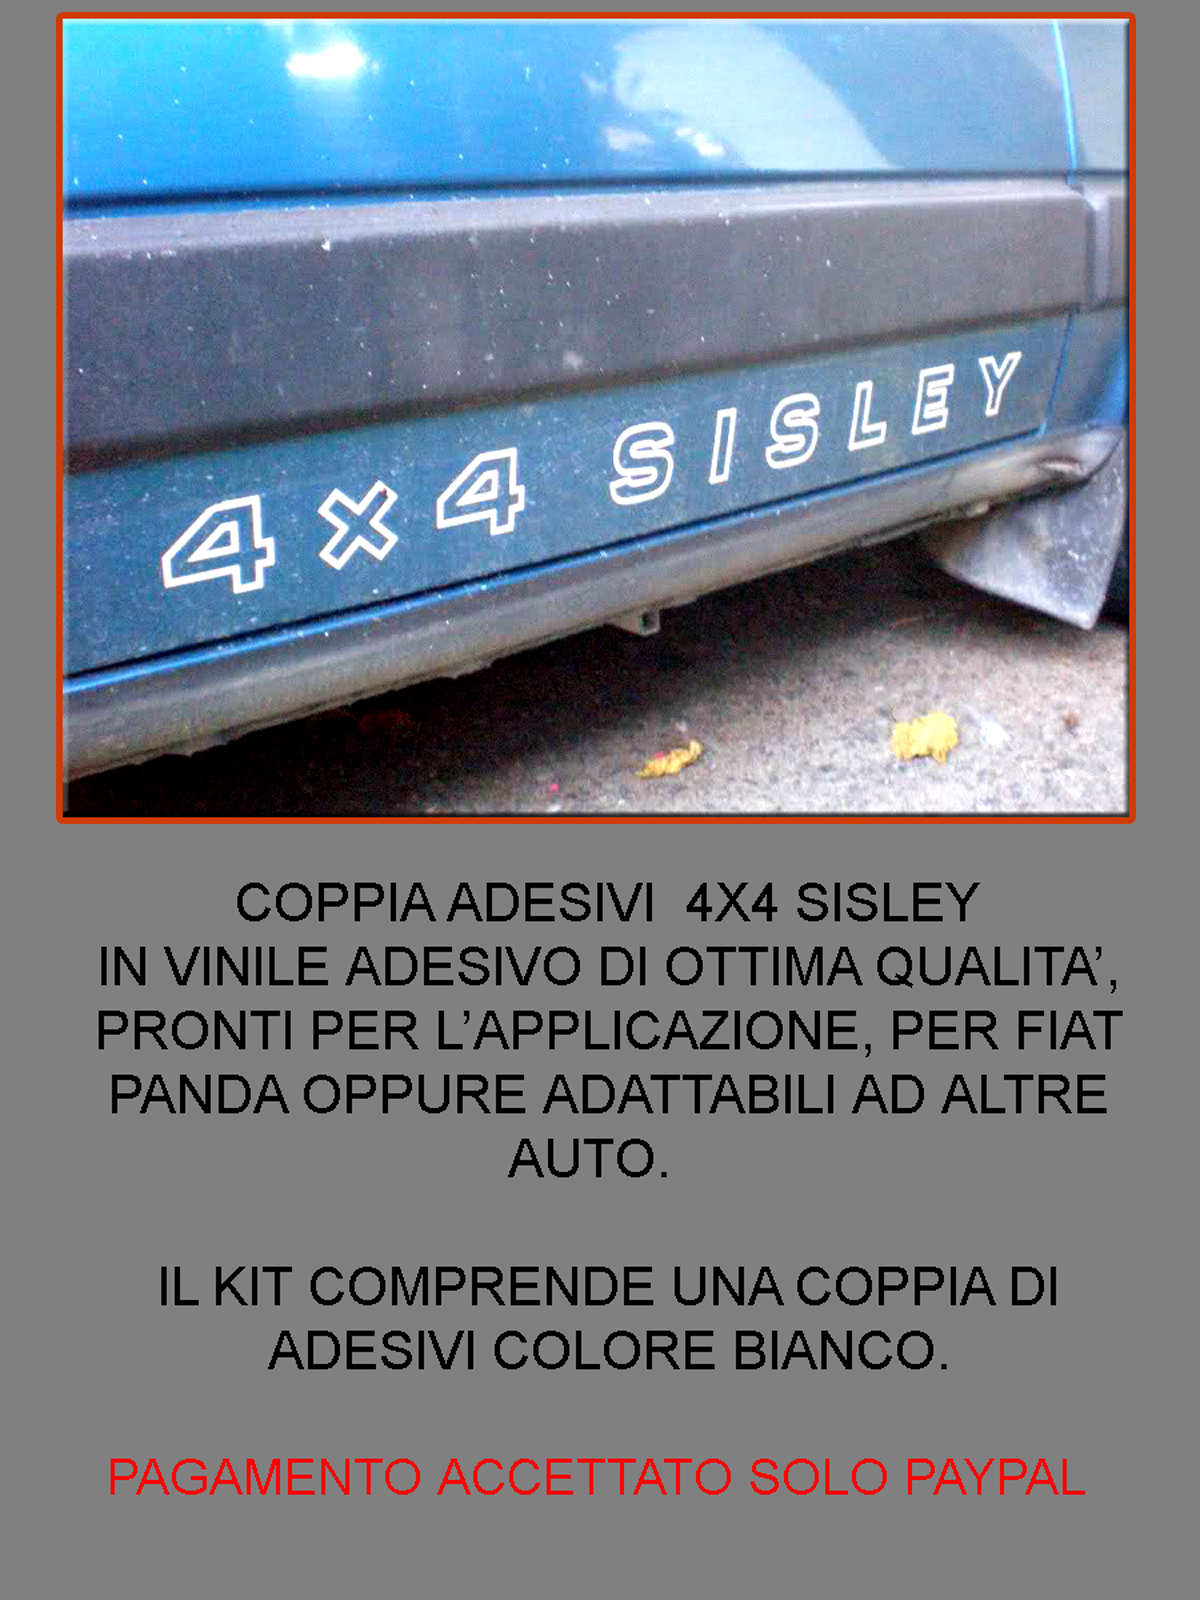 FIAT PANDA 4X4 ADESIVI SISLEY